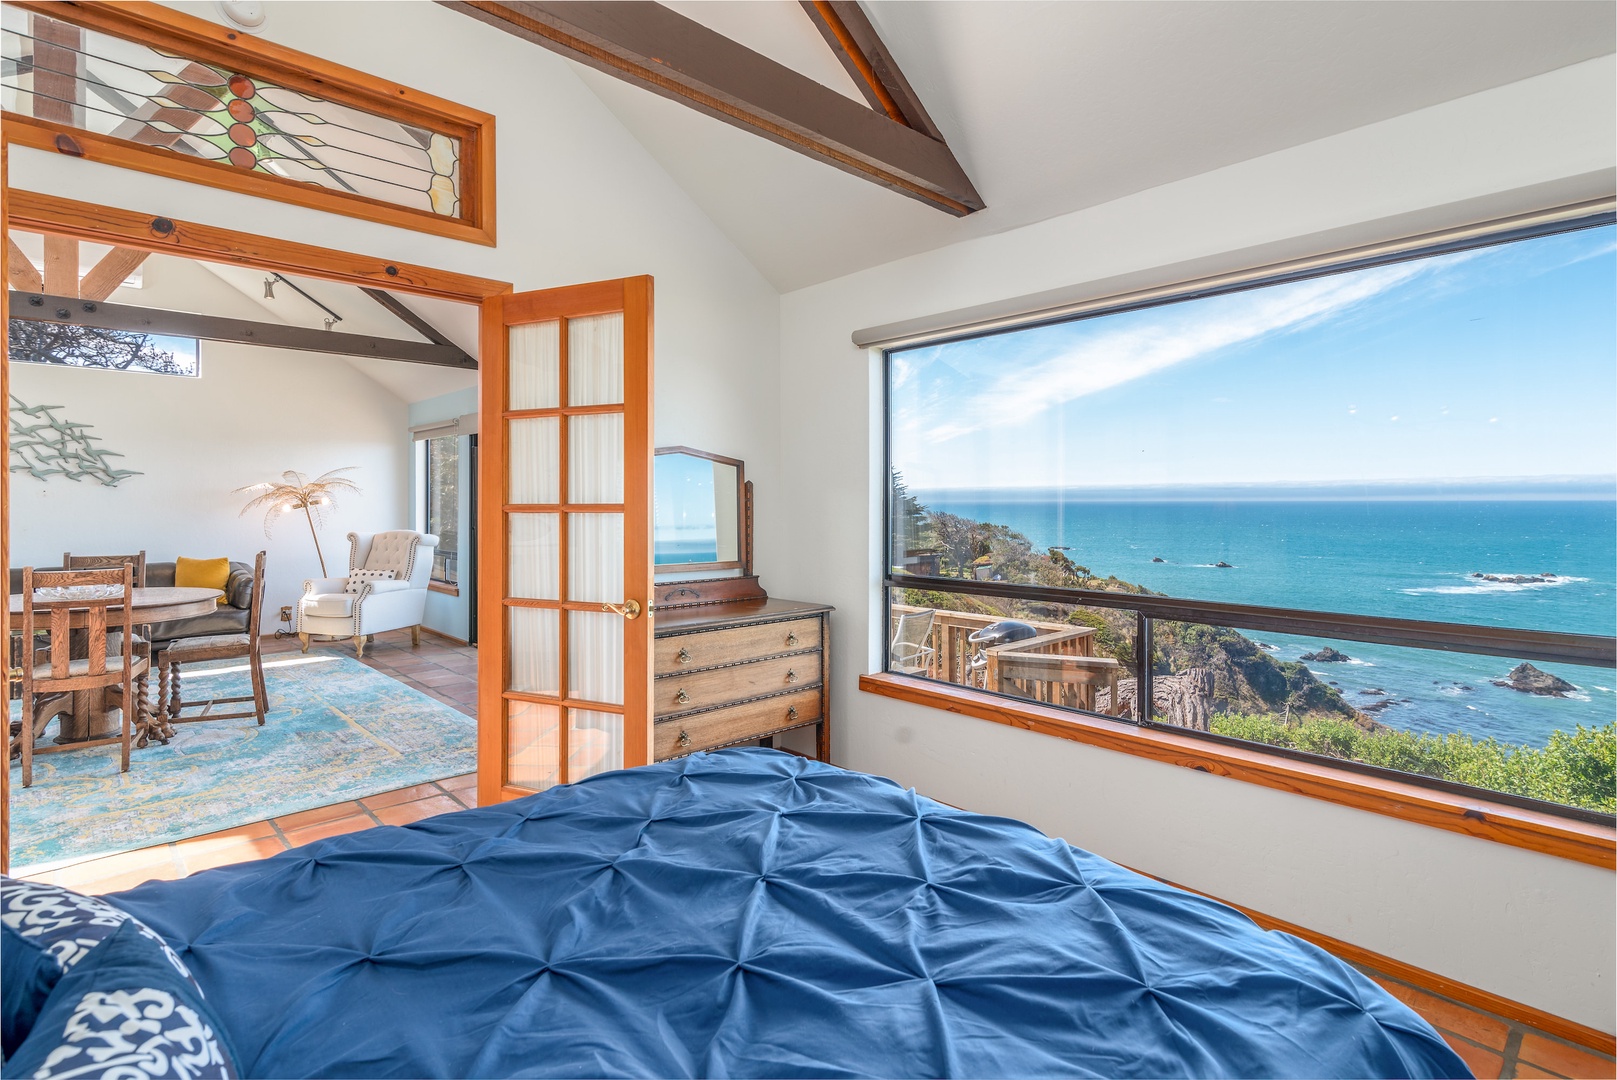 Queen bedroom with ocean views